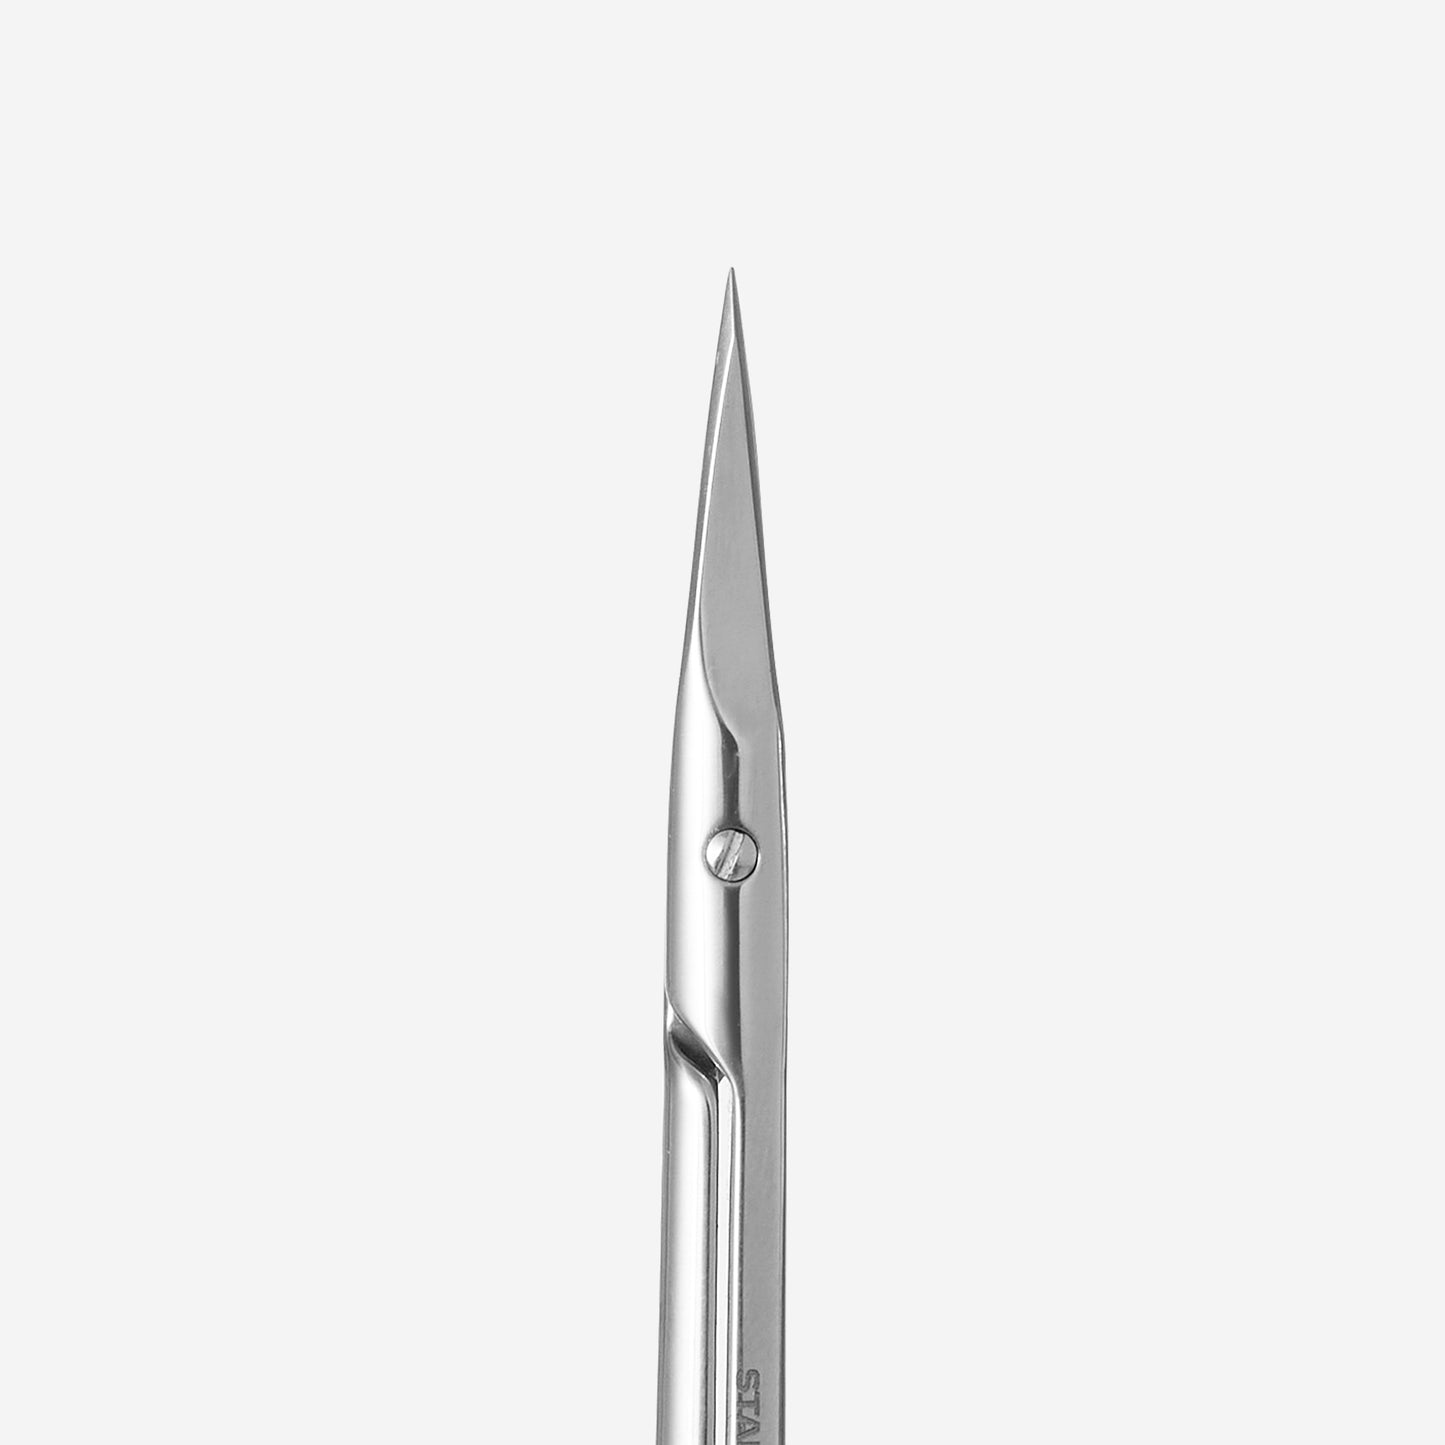 Straight multi-purpose scissors Staleks Classic 31 Type 1 SC-31/1